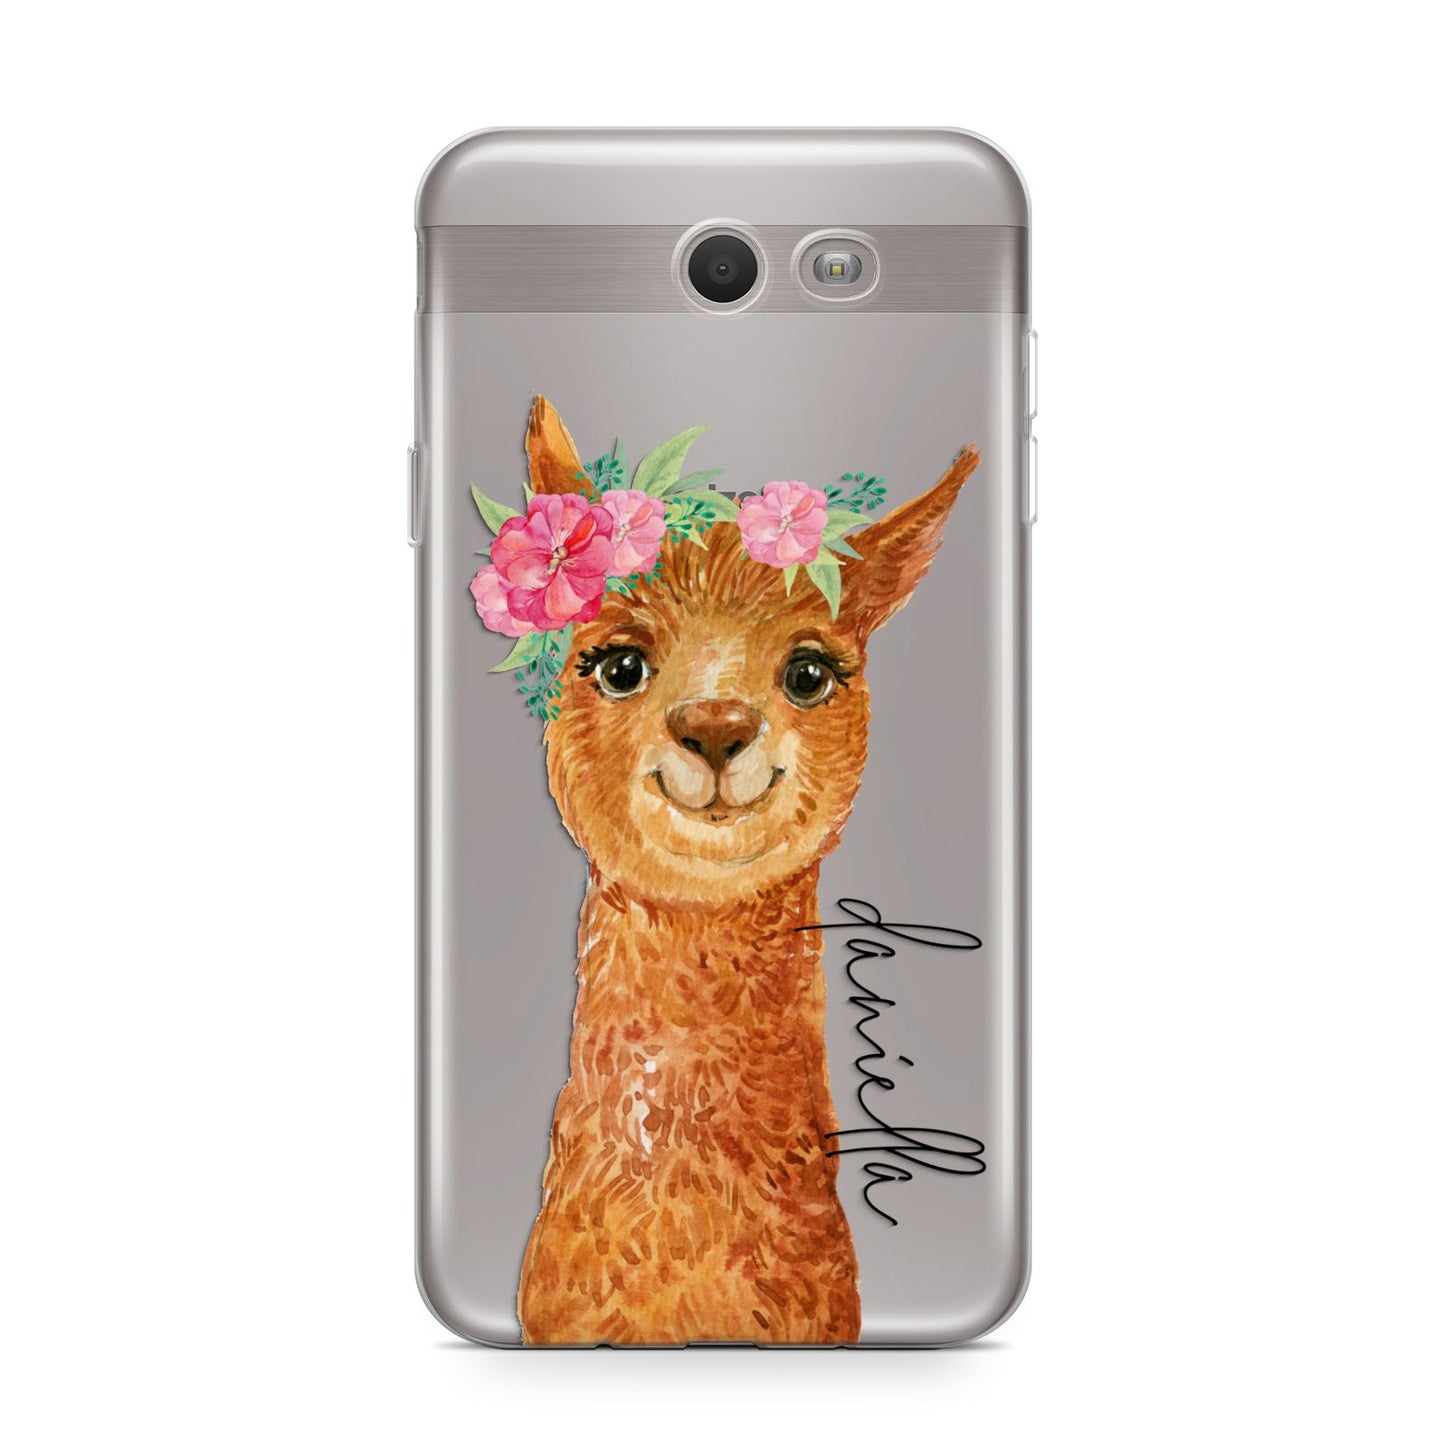 Personalised Llama Samsung Galaxy J7 2017 Case